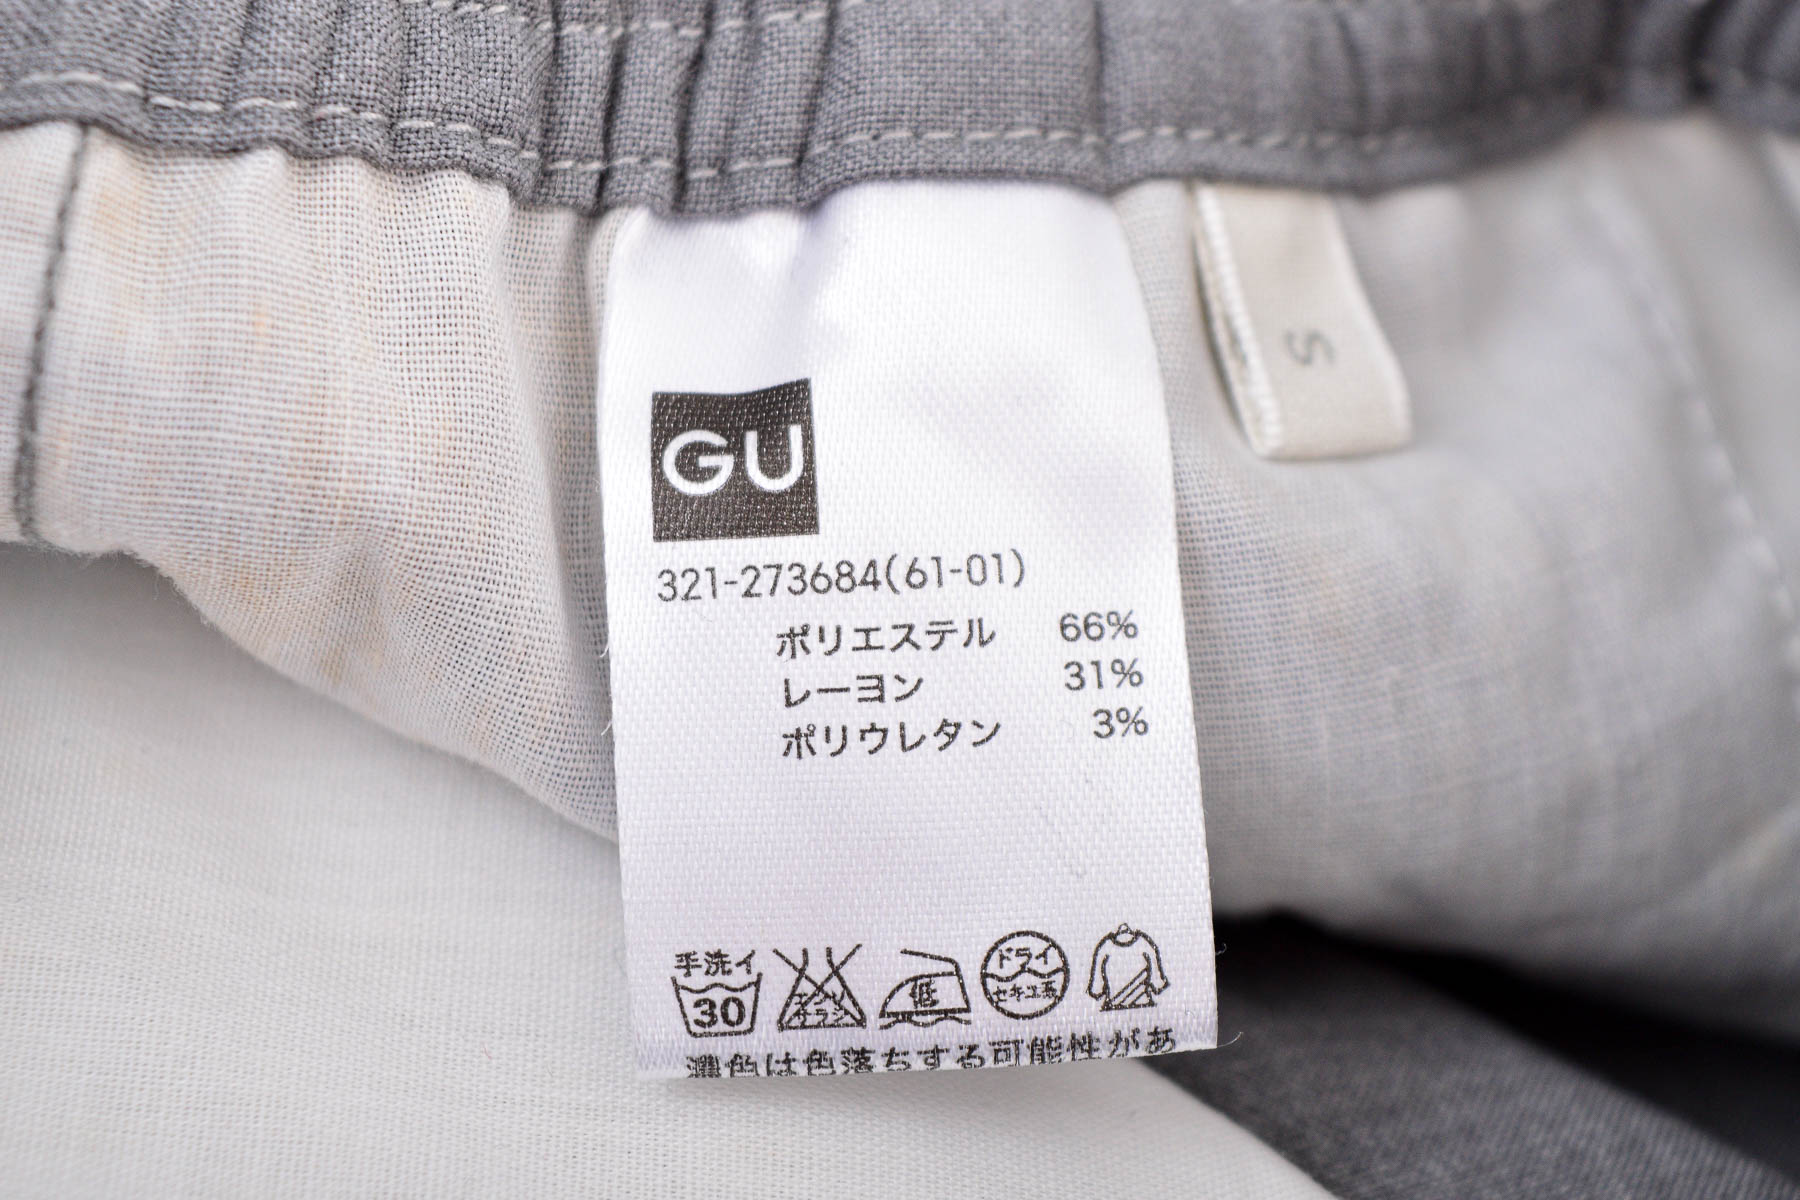 Męskie spodnie - Gu - 2